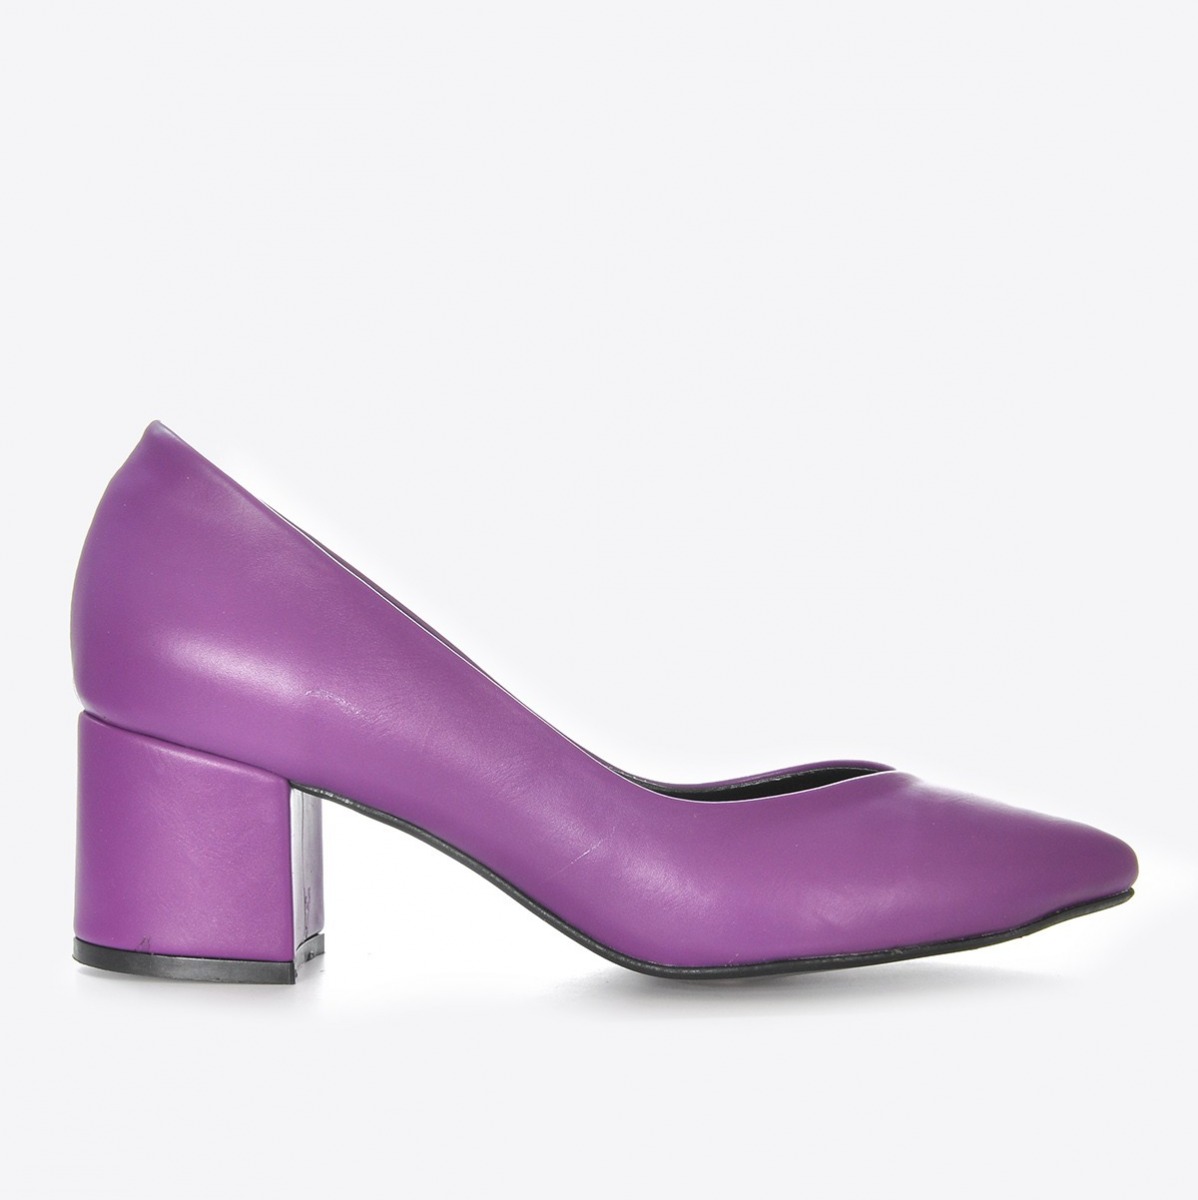 Flo Kadın Mor Klasik Topuklu Ayakkabı VZN21-040Y. 2